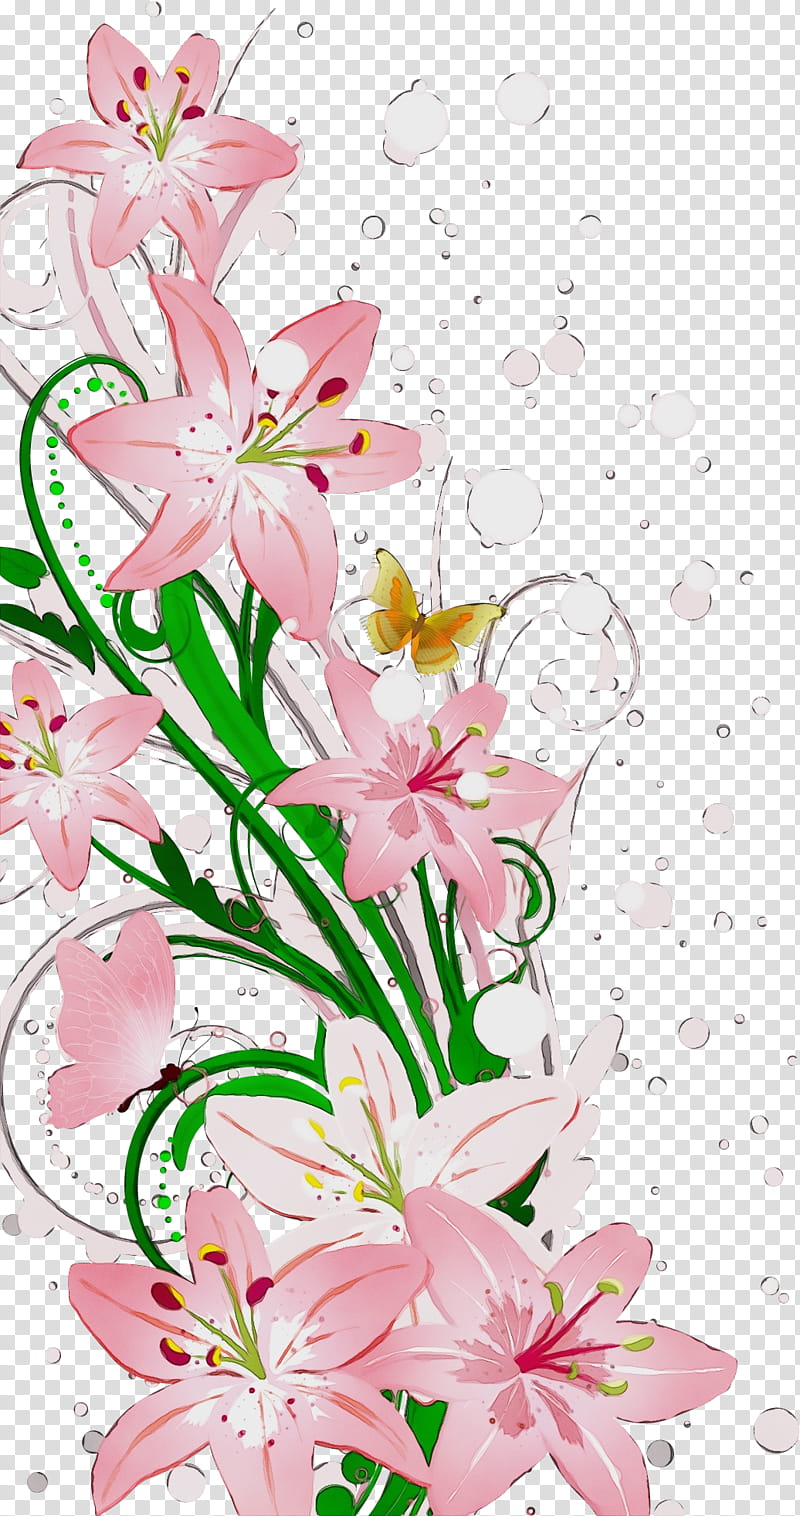 Floral design, Lily Flower, Watercolor, Paint, Wet Ink, Cut Flowers, Plant Stem, Flower Bouquet transparent background PNG clipart